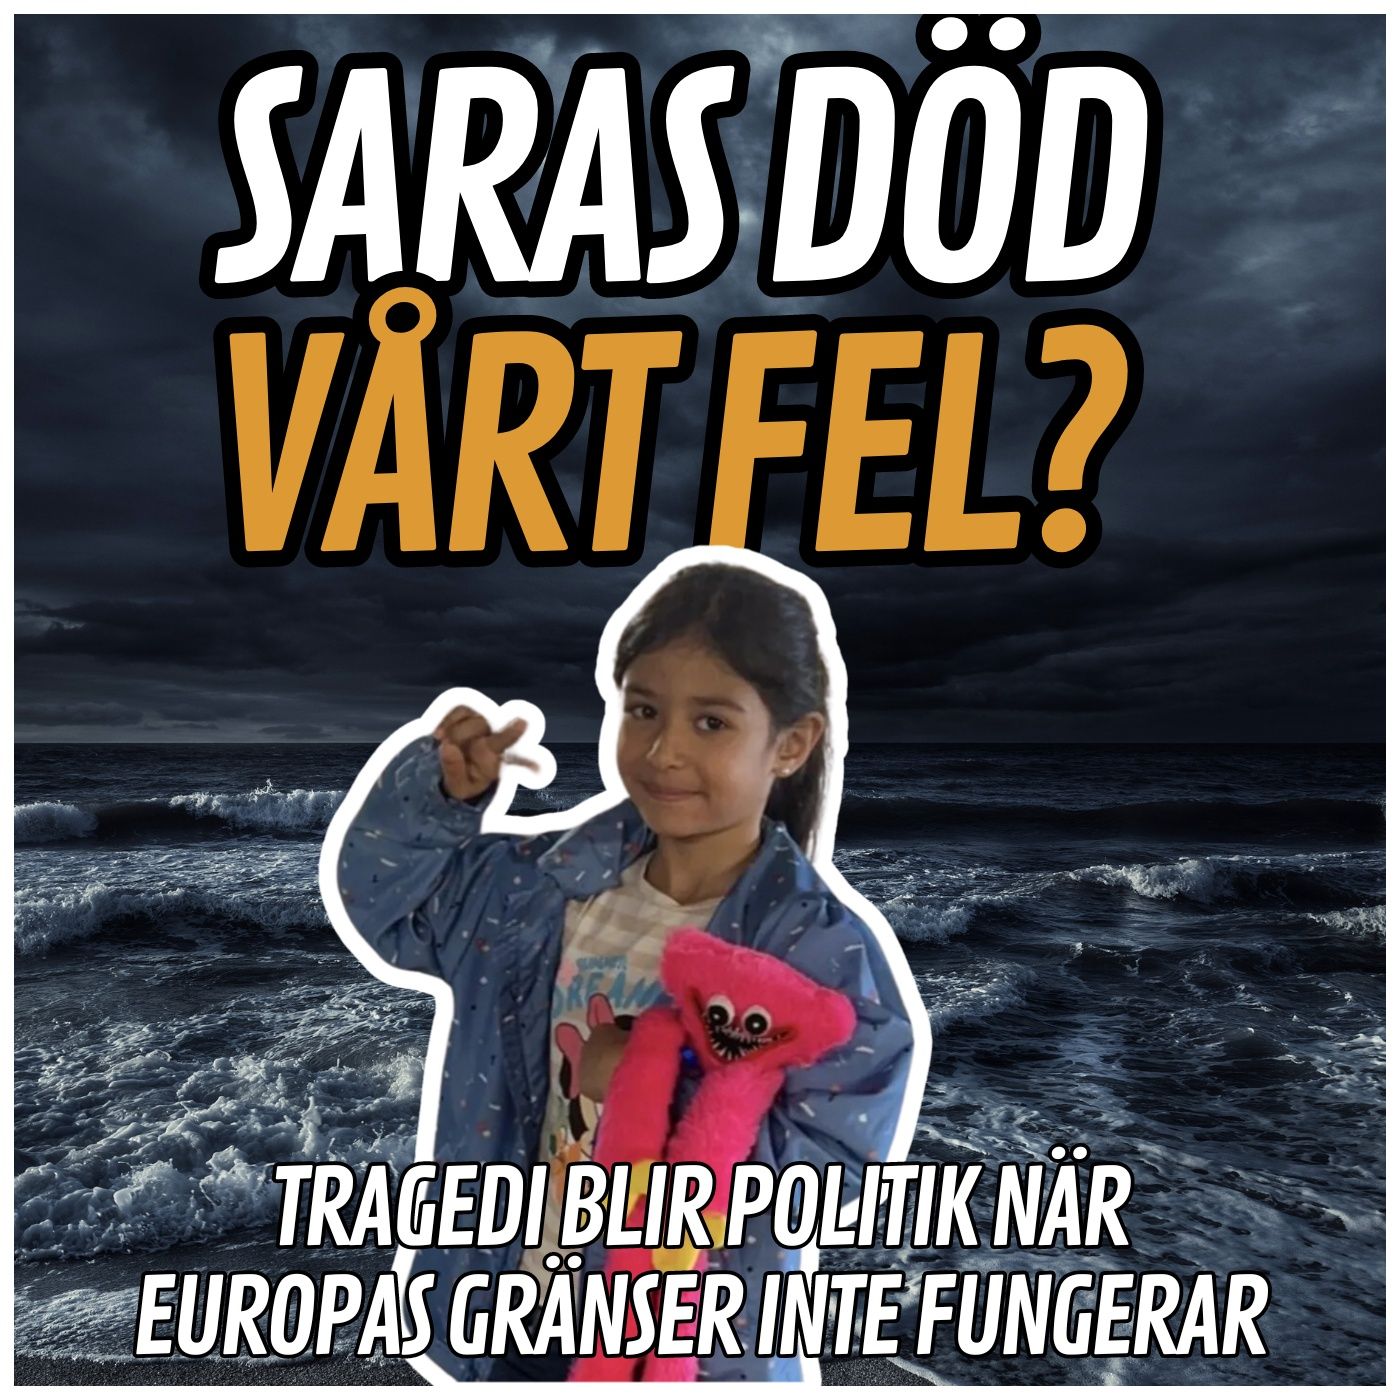 Irakiska Sara, 7 år, dog i Engelska kanalen — vad är svenska politikers skuld?